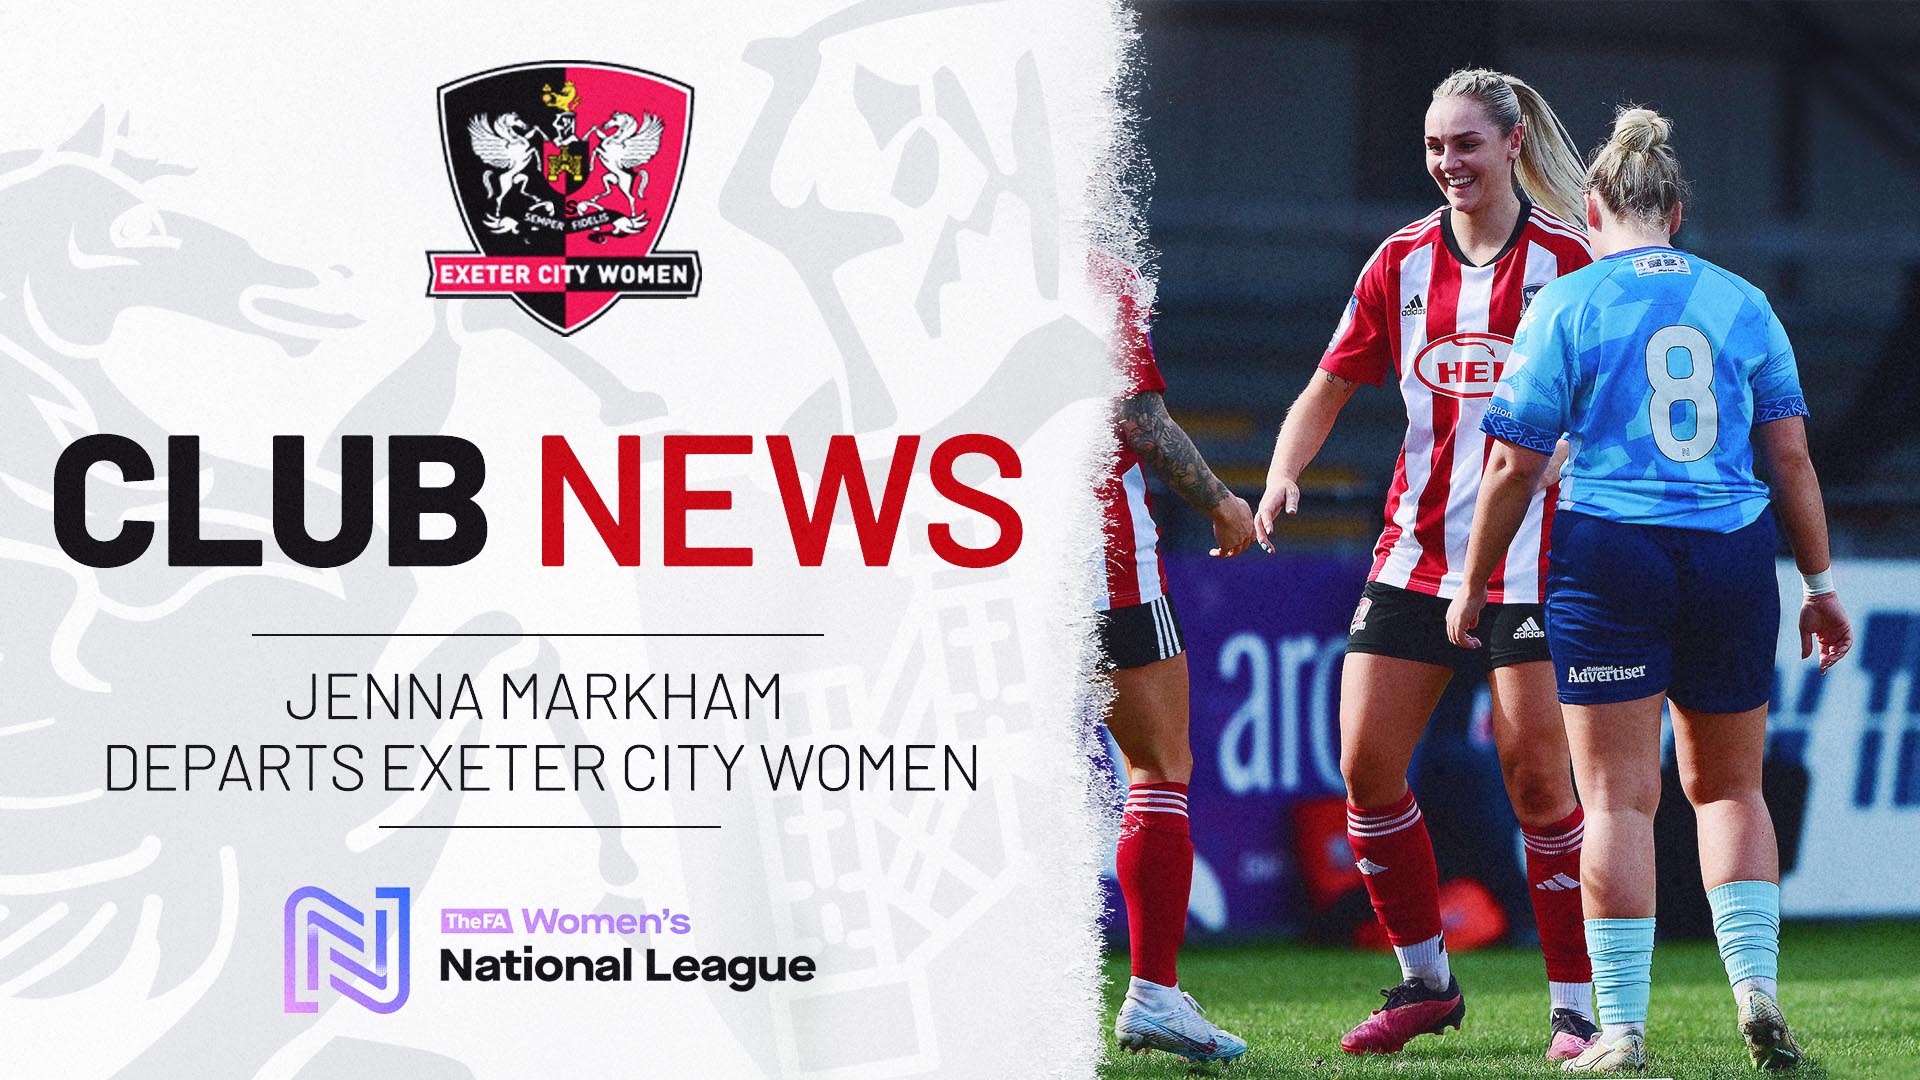 Jenna Markham departs Exeter City Women